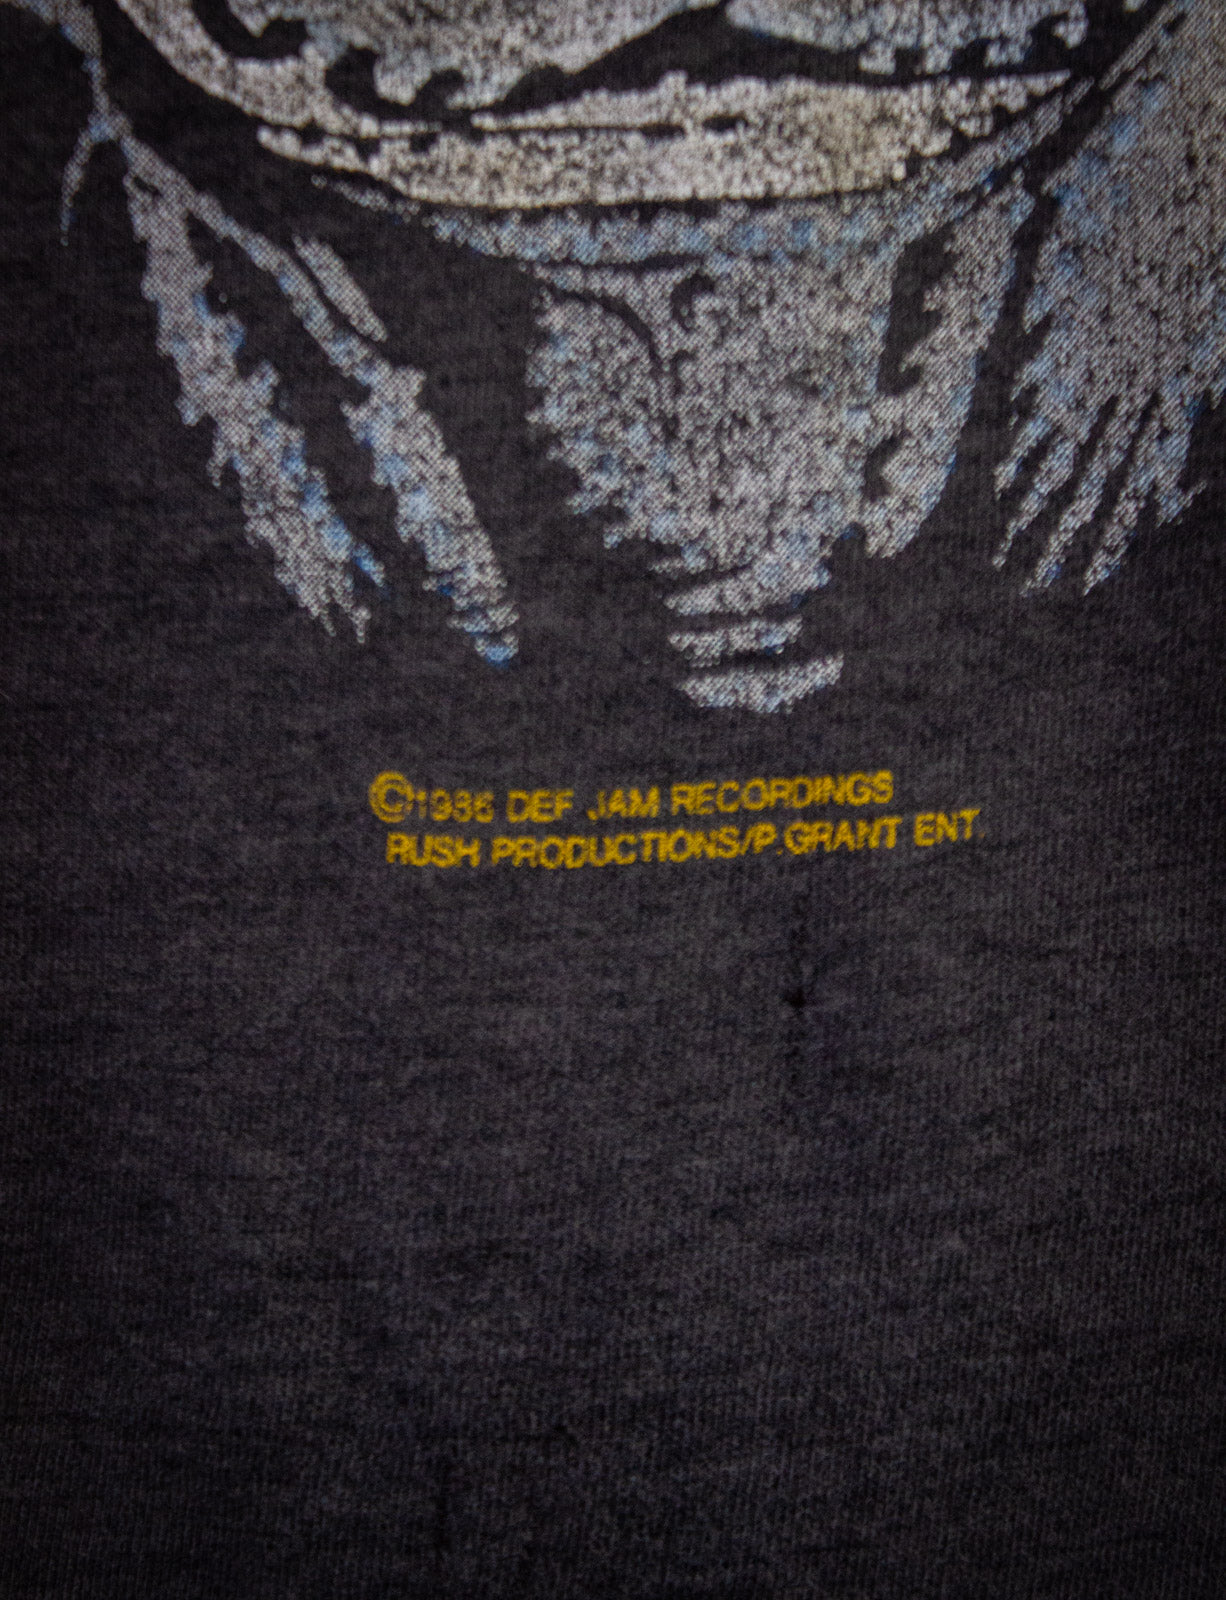 Vintage Slayer Criminally Insane Concert T Shirt 1986 Black/Grey Large